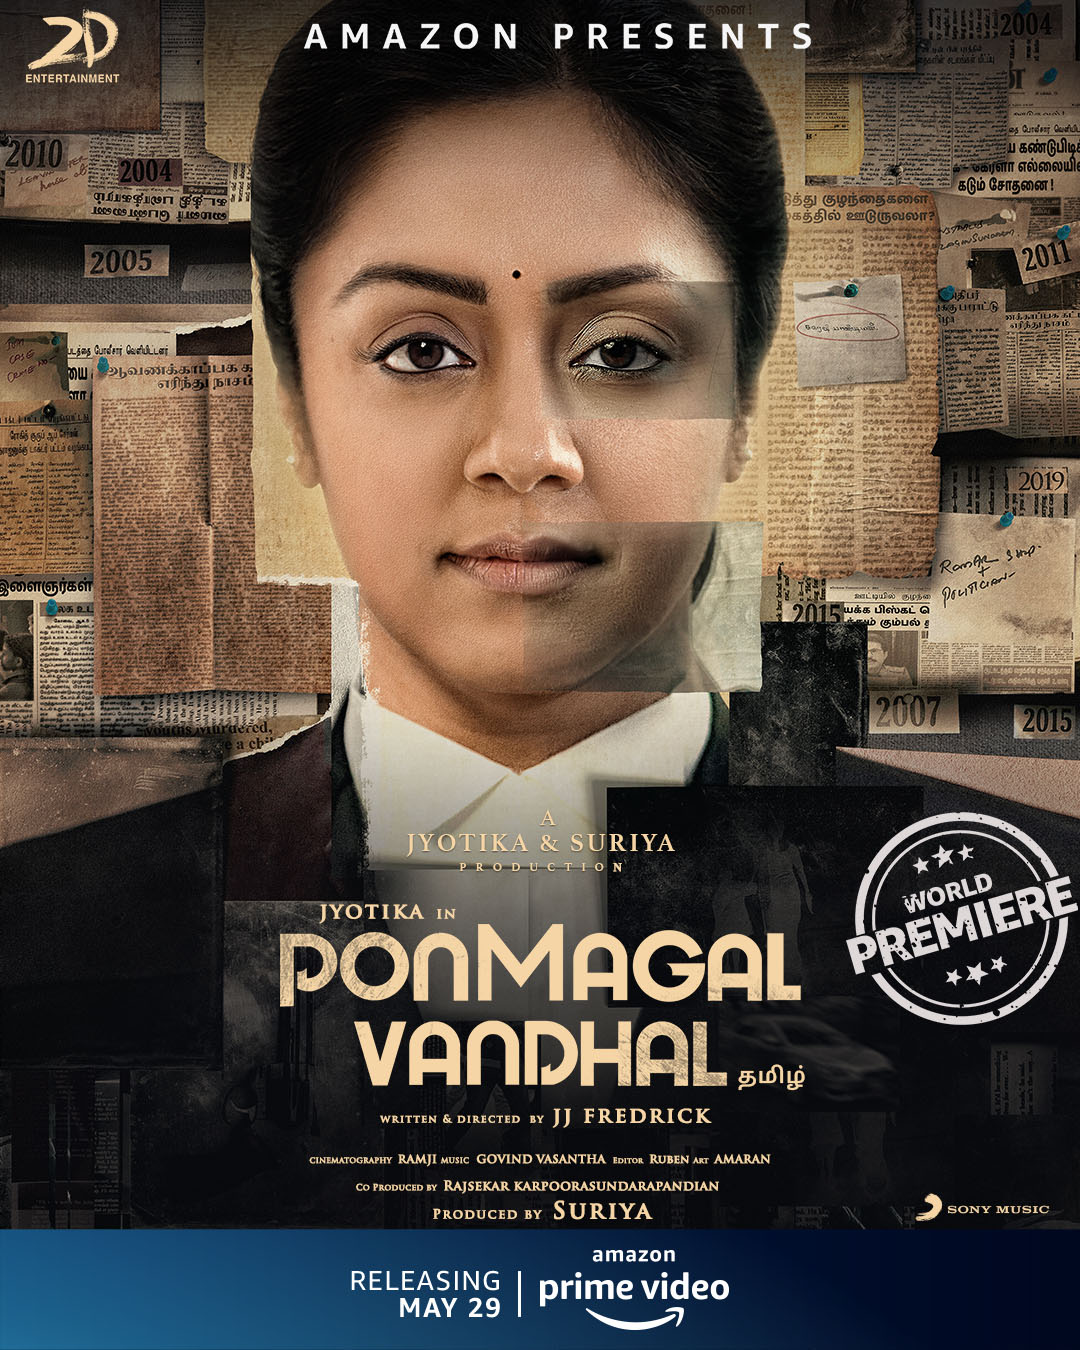 Jyotika in Ponmagal Vandhal releasing on 29th May